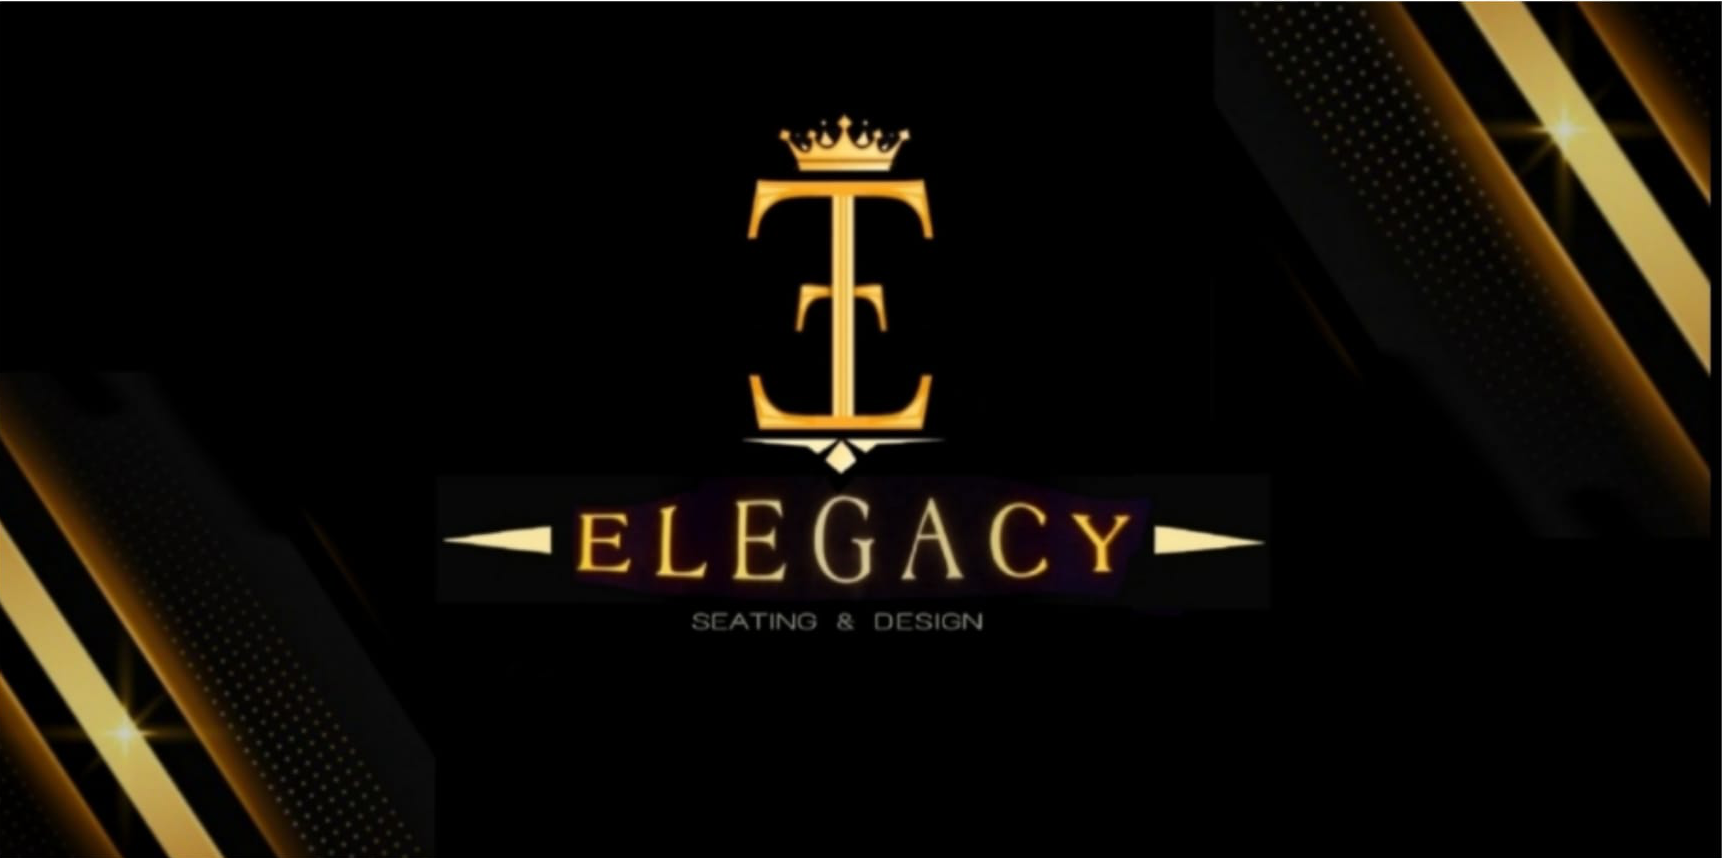 Elegacy, LLC